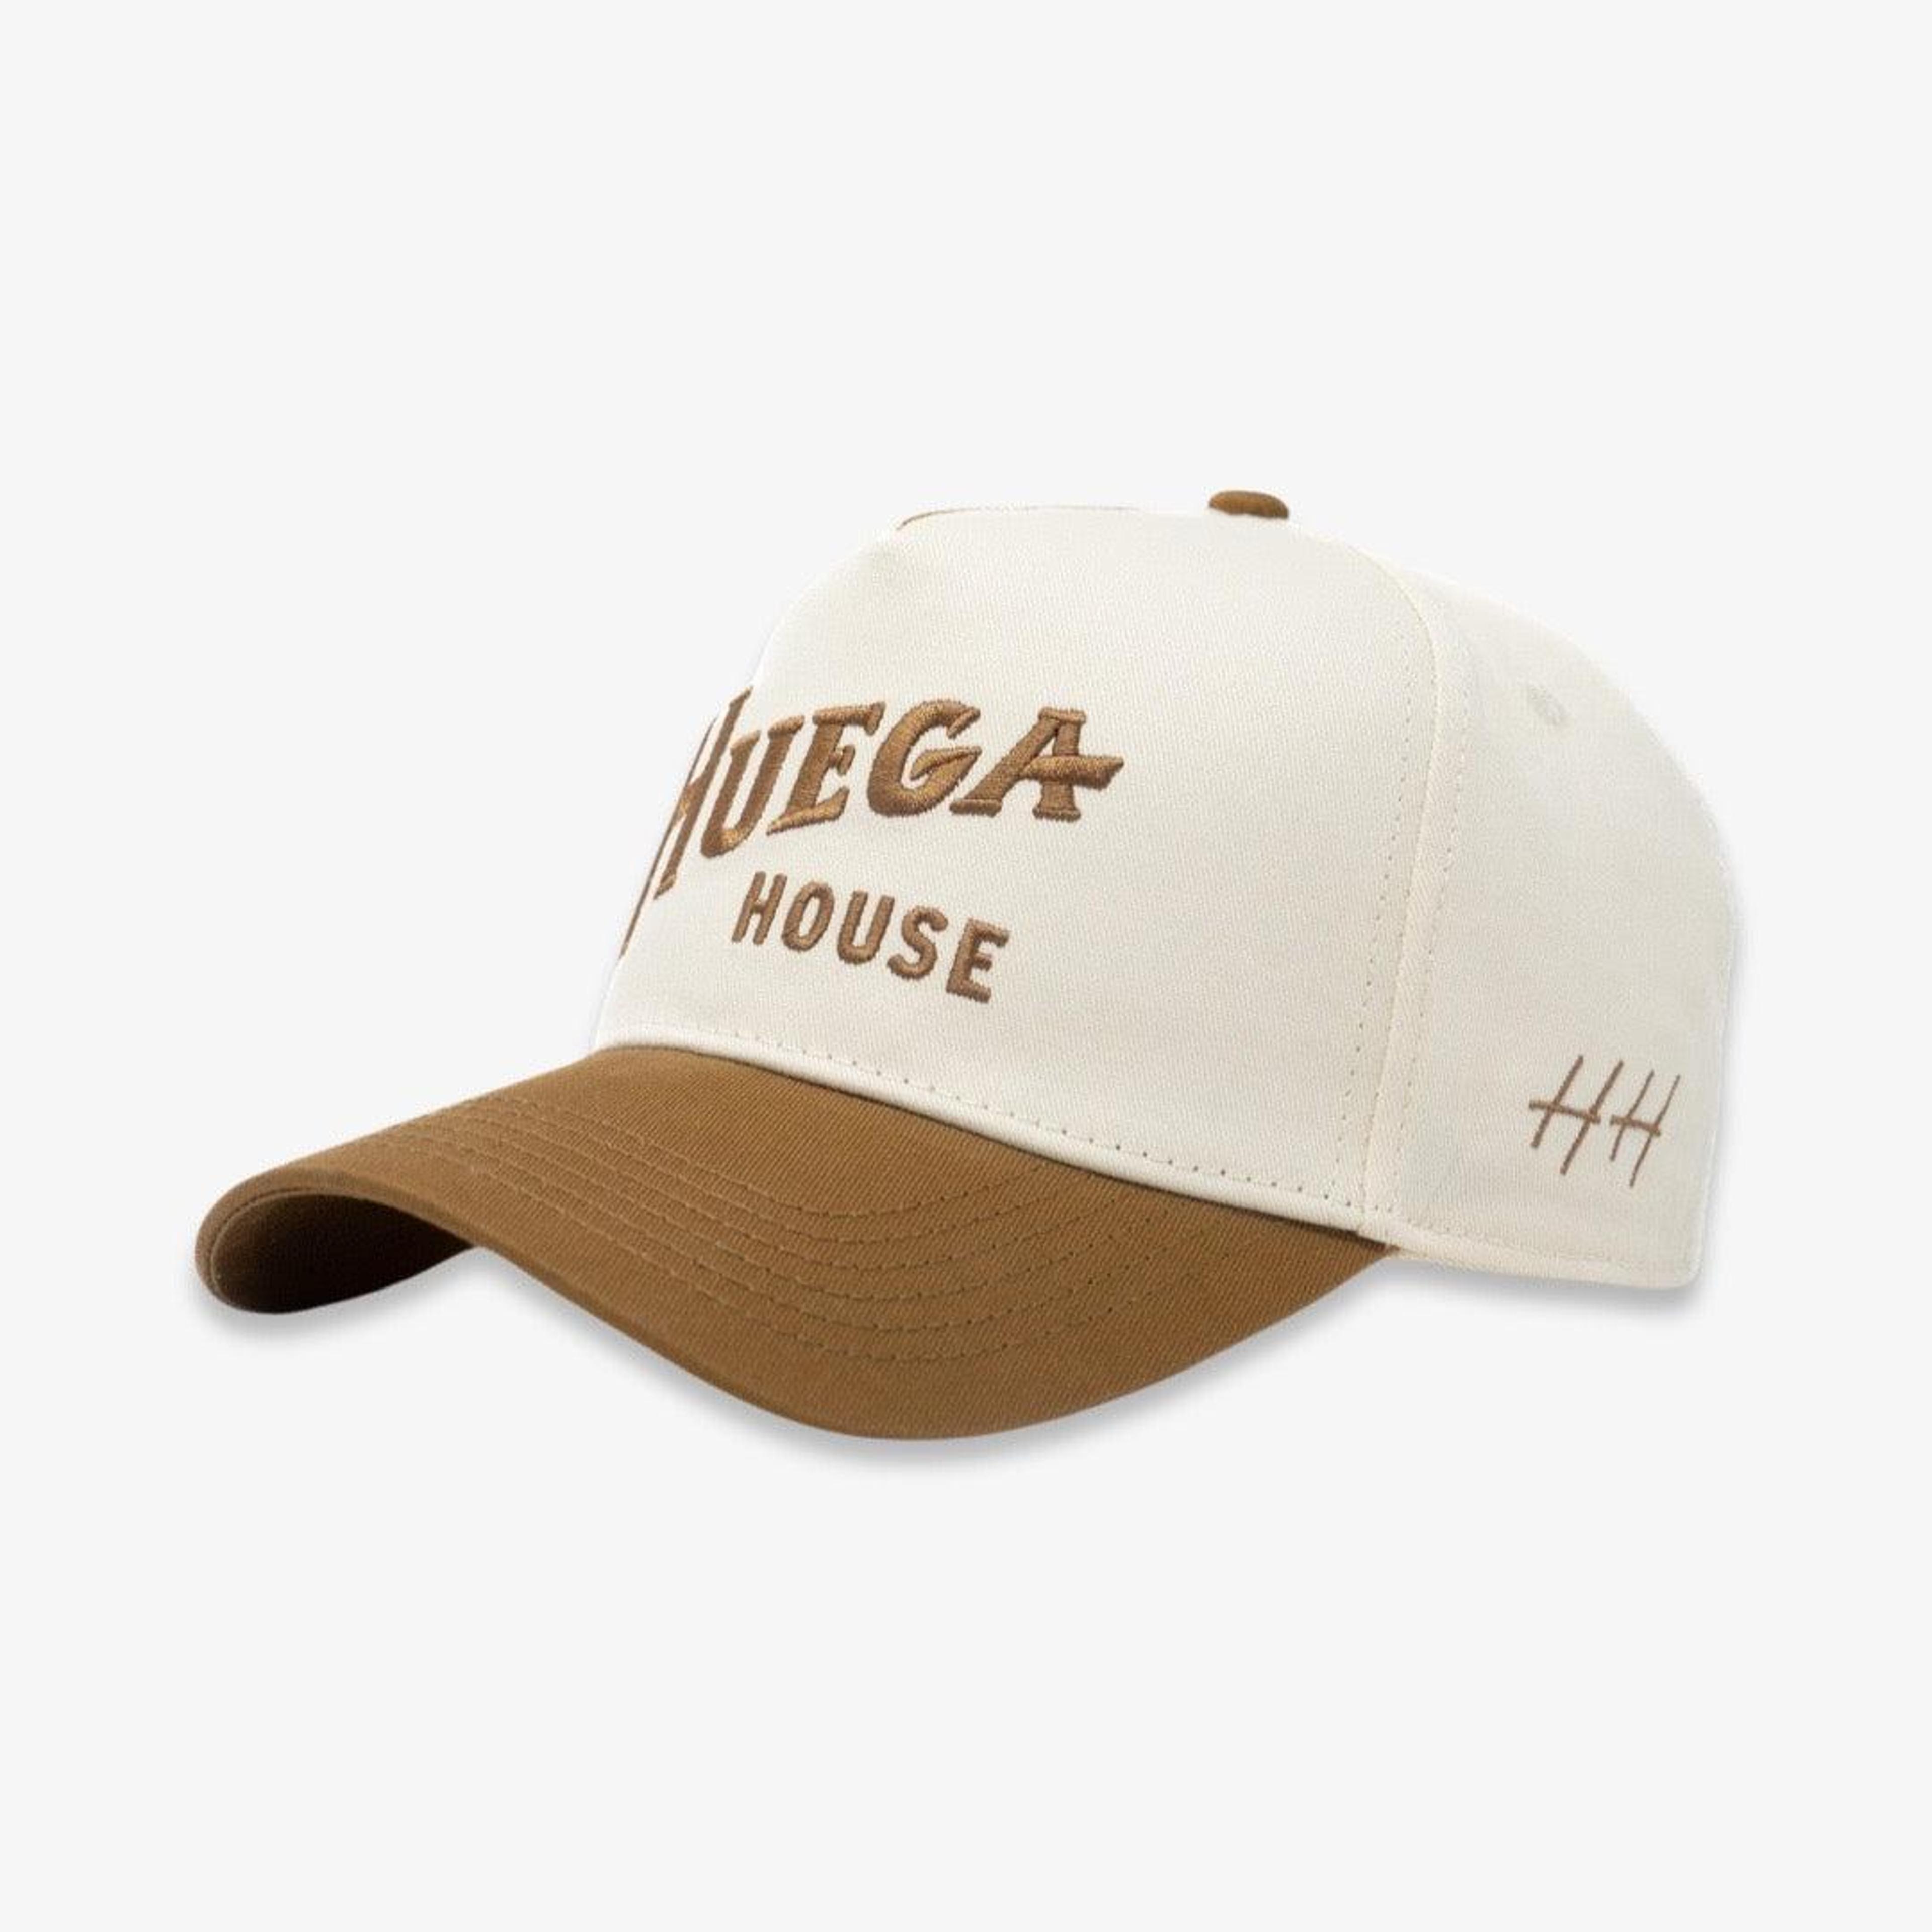 Huega House 'Saddleback' 2-Tone 5-Panel Snapback Hat Off-White /